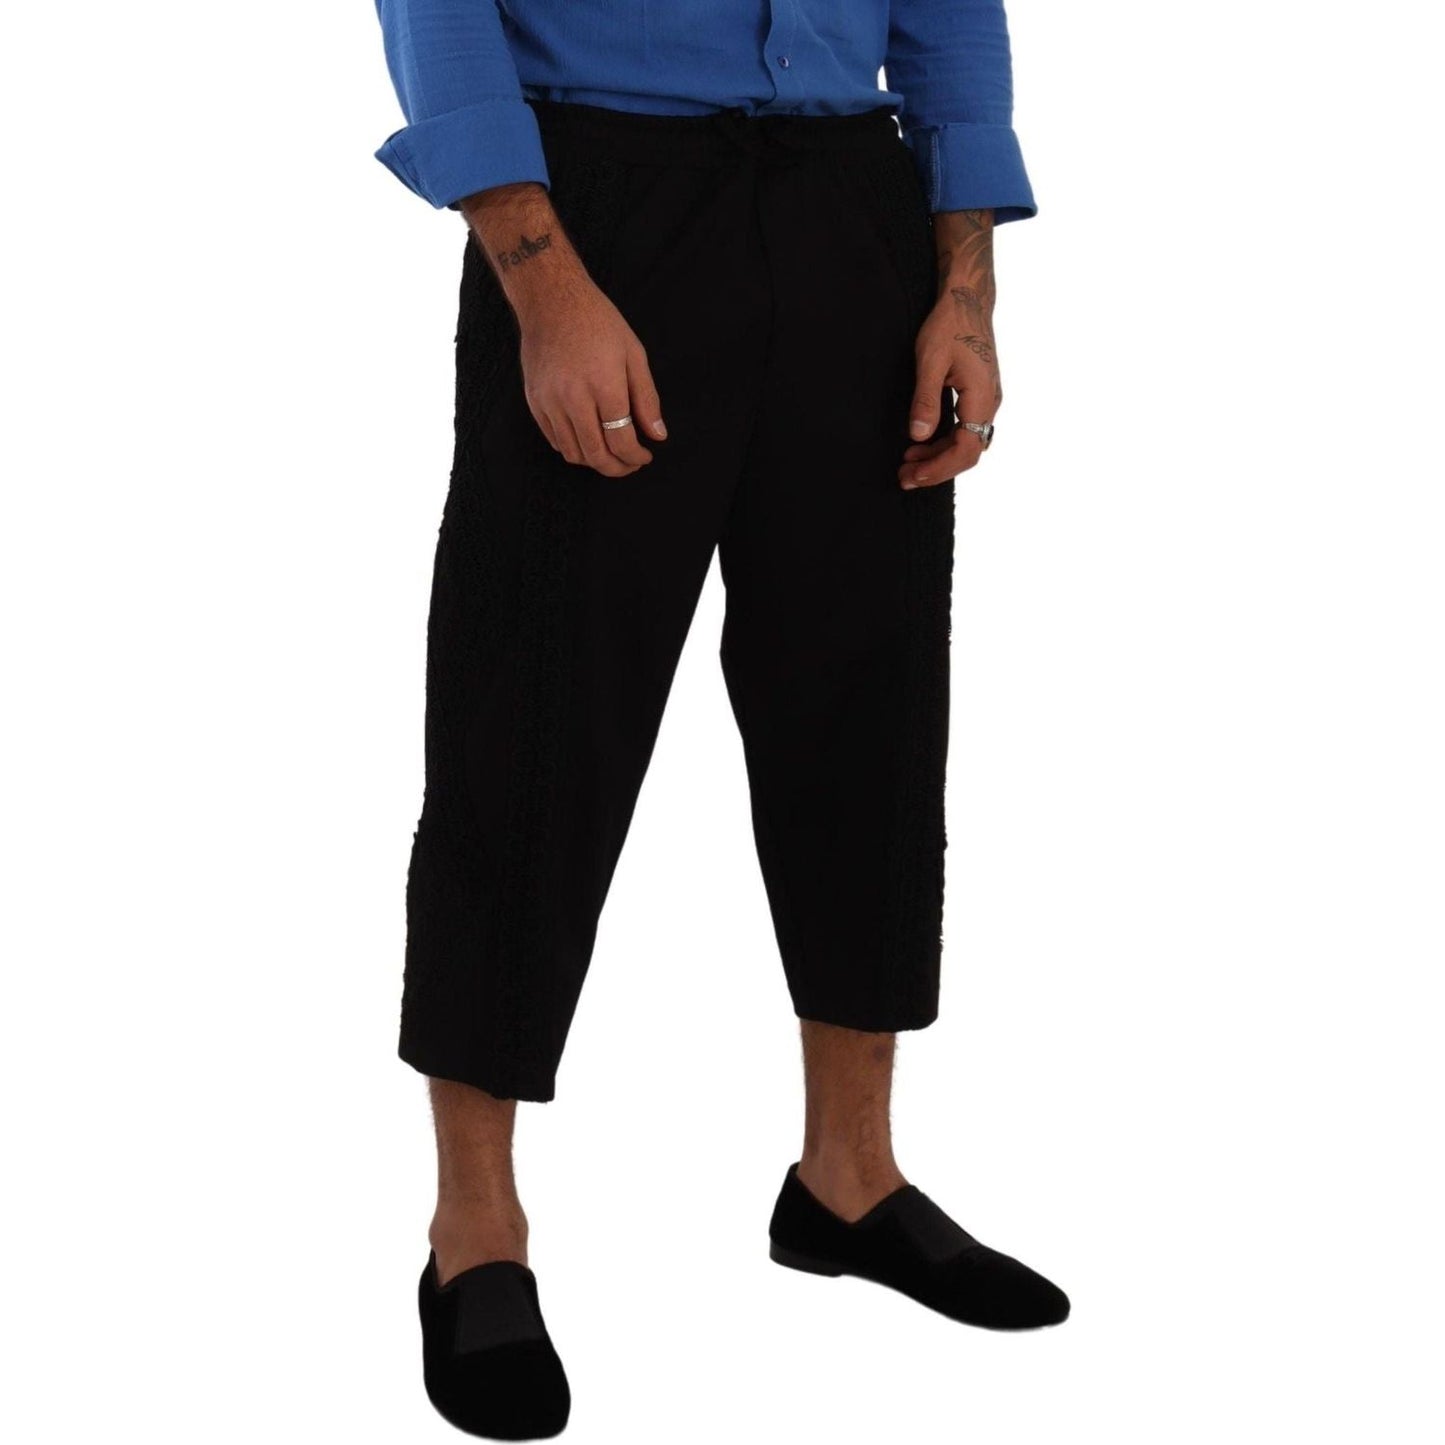 Dolce & Gabbana Elegant Black Cotton Blend Cropped Pants black-cotton-torero-cropped-short-trouser-pants